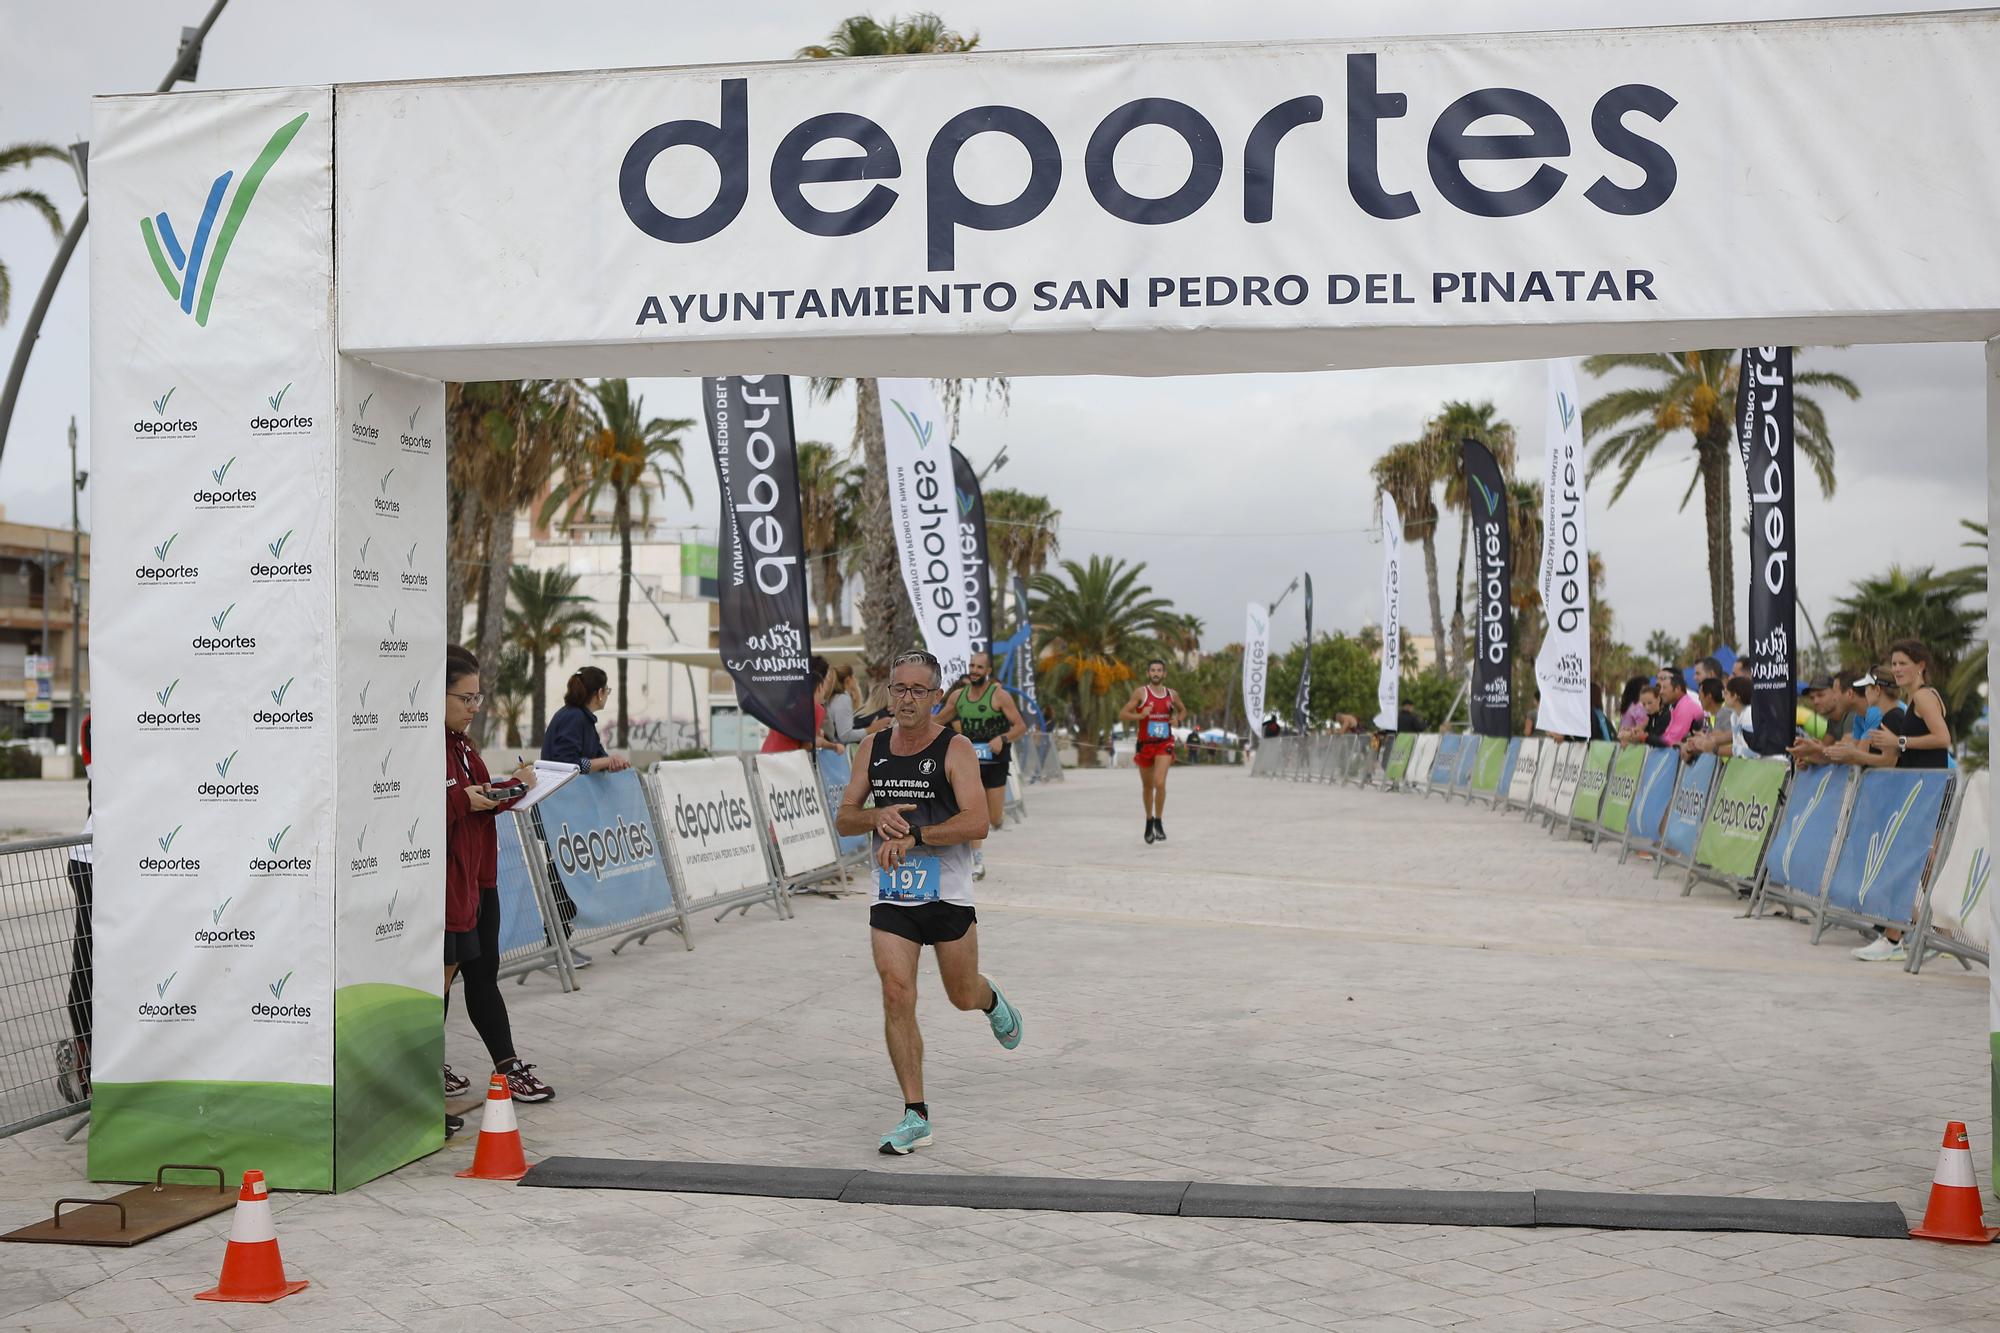 La media maratón Paraíso Salado de San Pedro del Pinatar, en imágenes